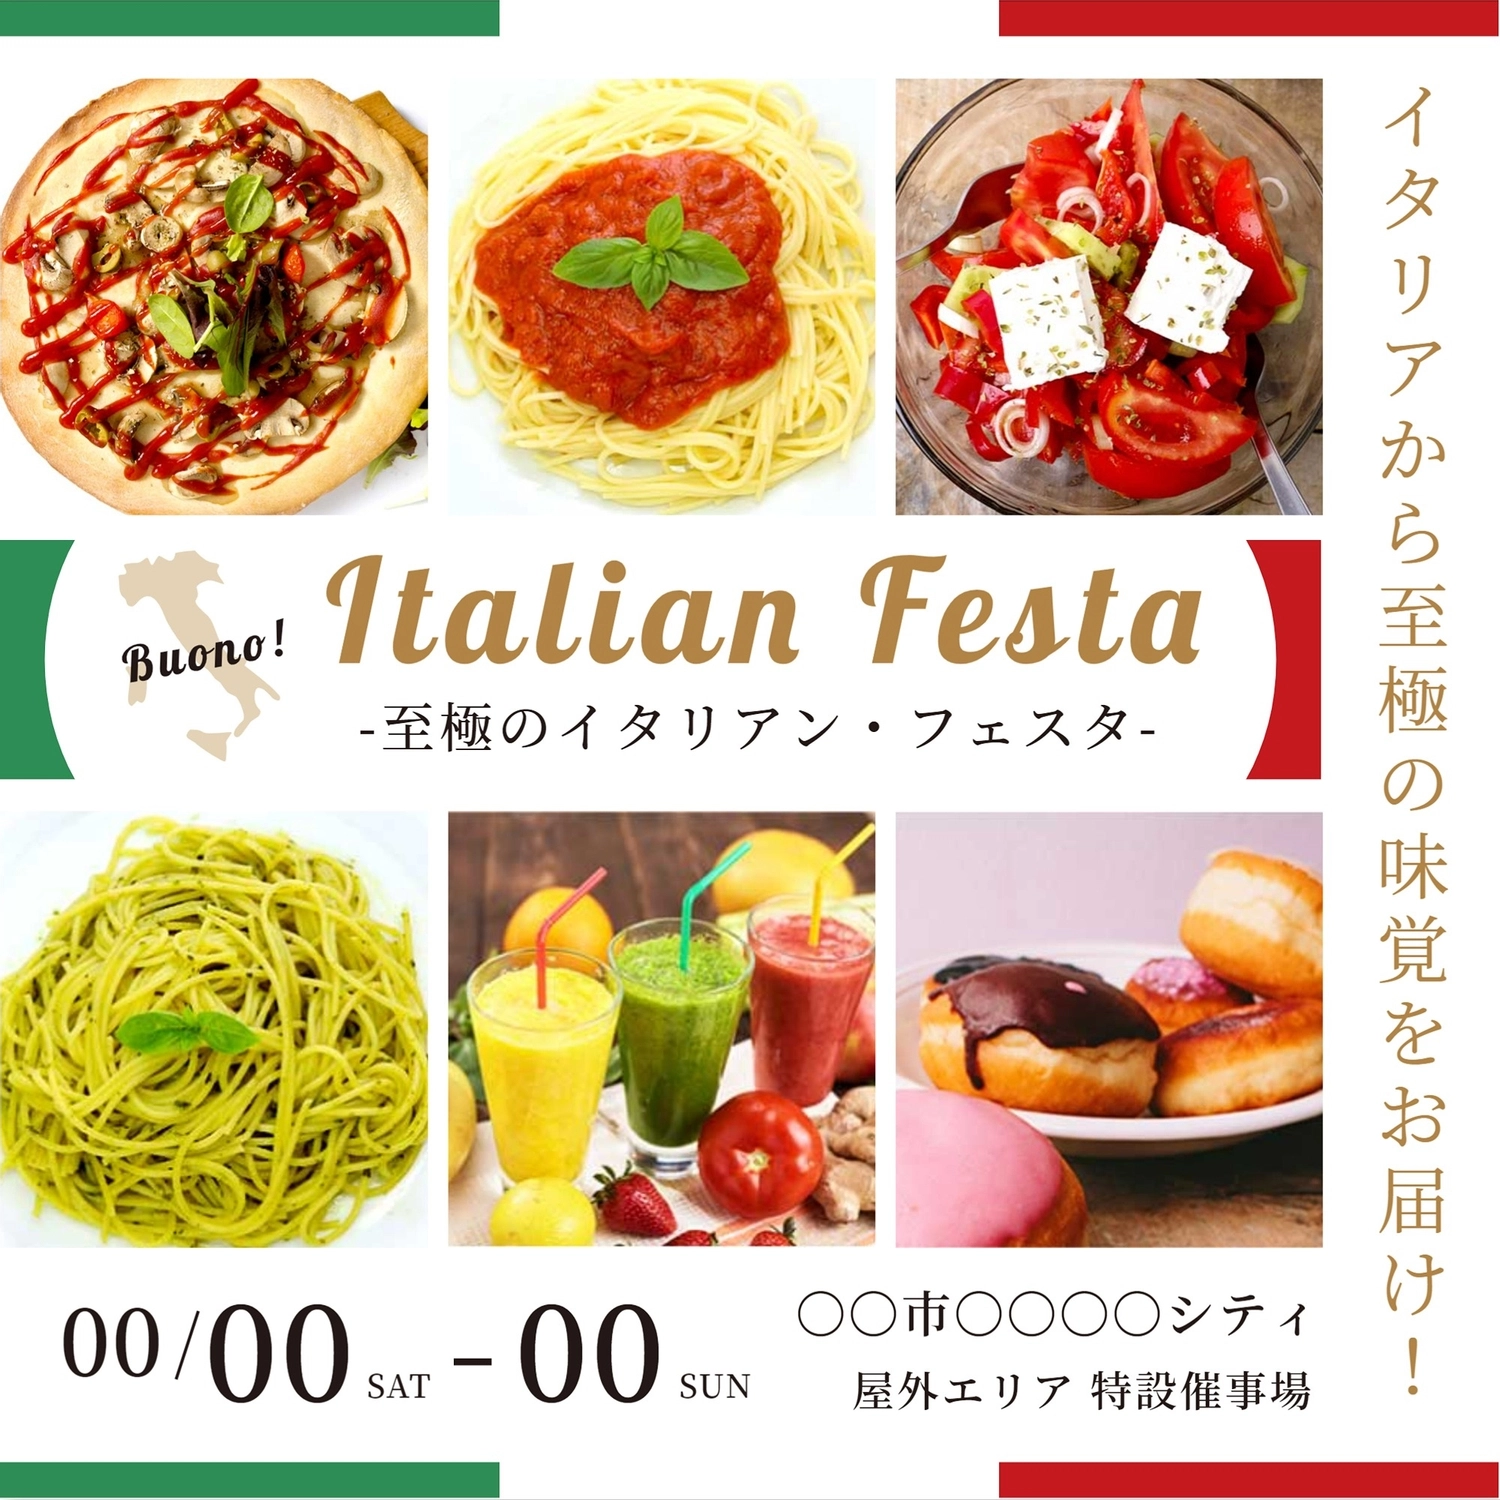 イタリアフェスのテンプレート, トマトサラダ, ダイエット, 期間限定, Instagram広告テンプレート